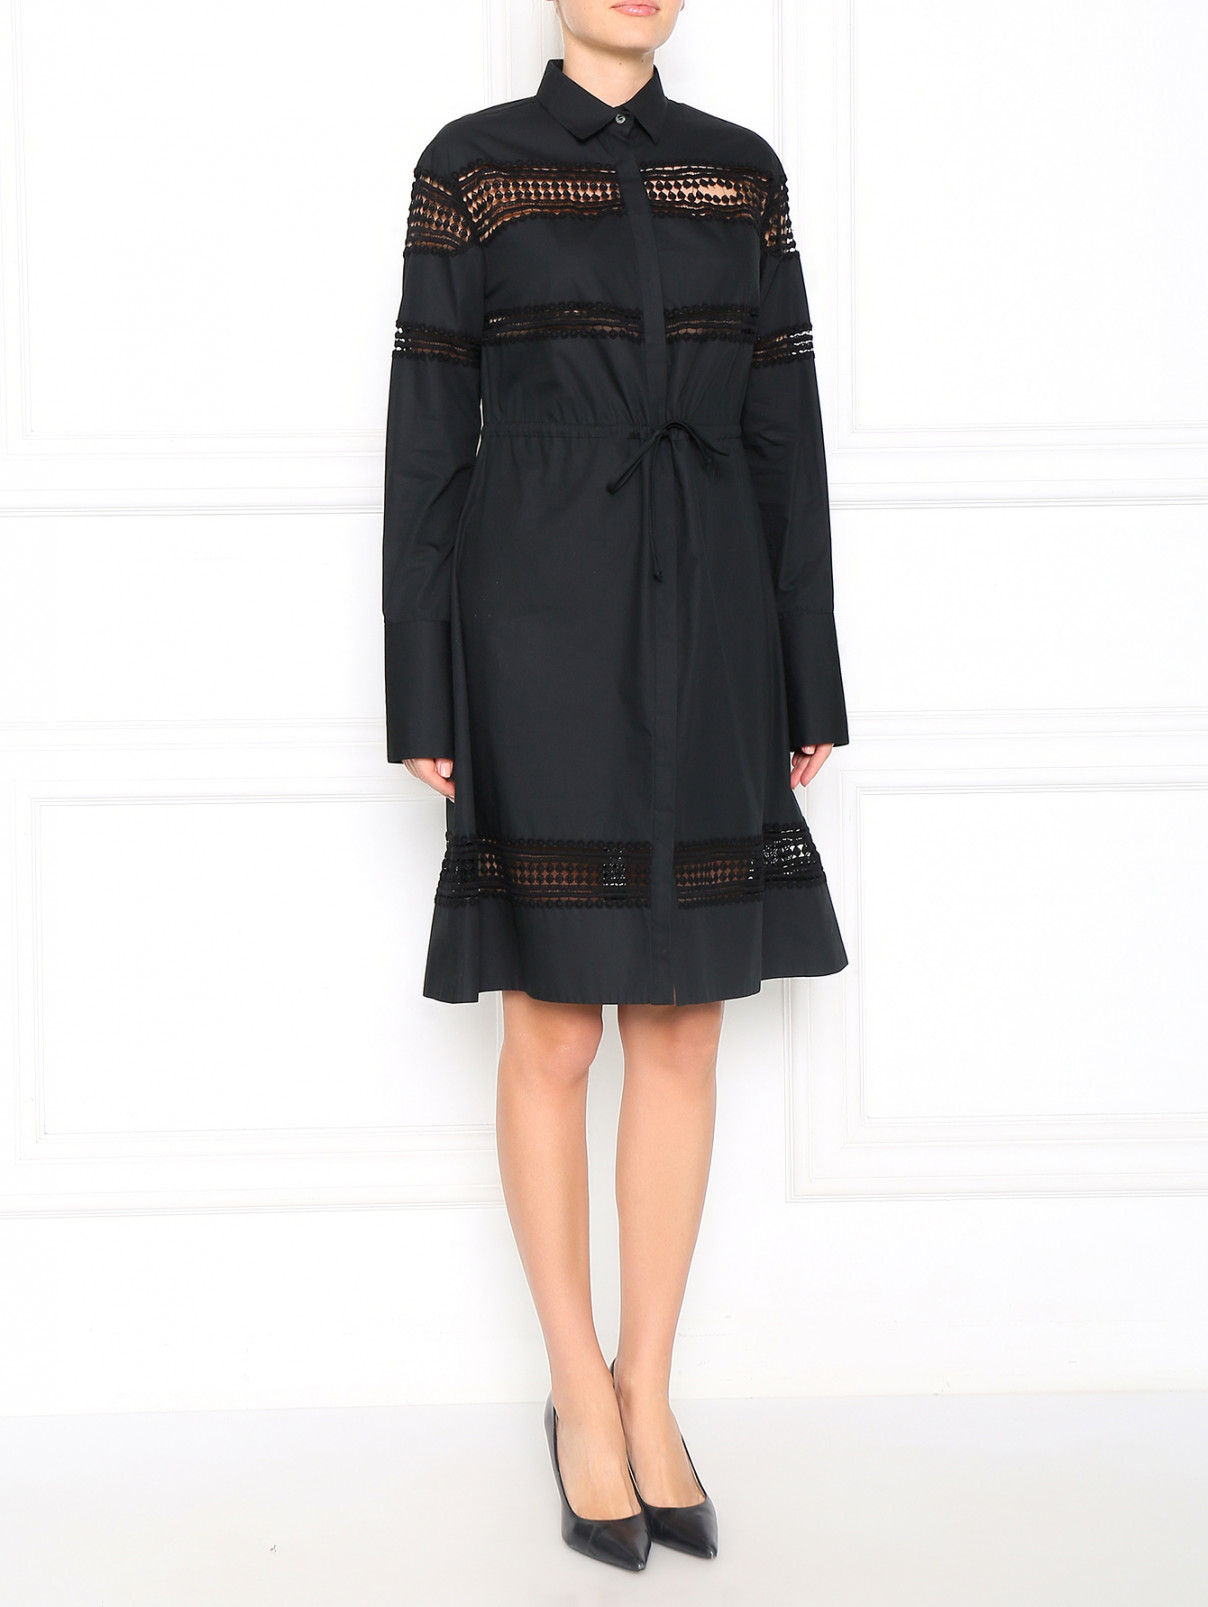 Платье из хлопка с декоративными вставками Aquilano Rimondi  –  Модель Общий вид  – Цвет:  Черный